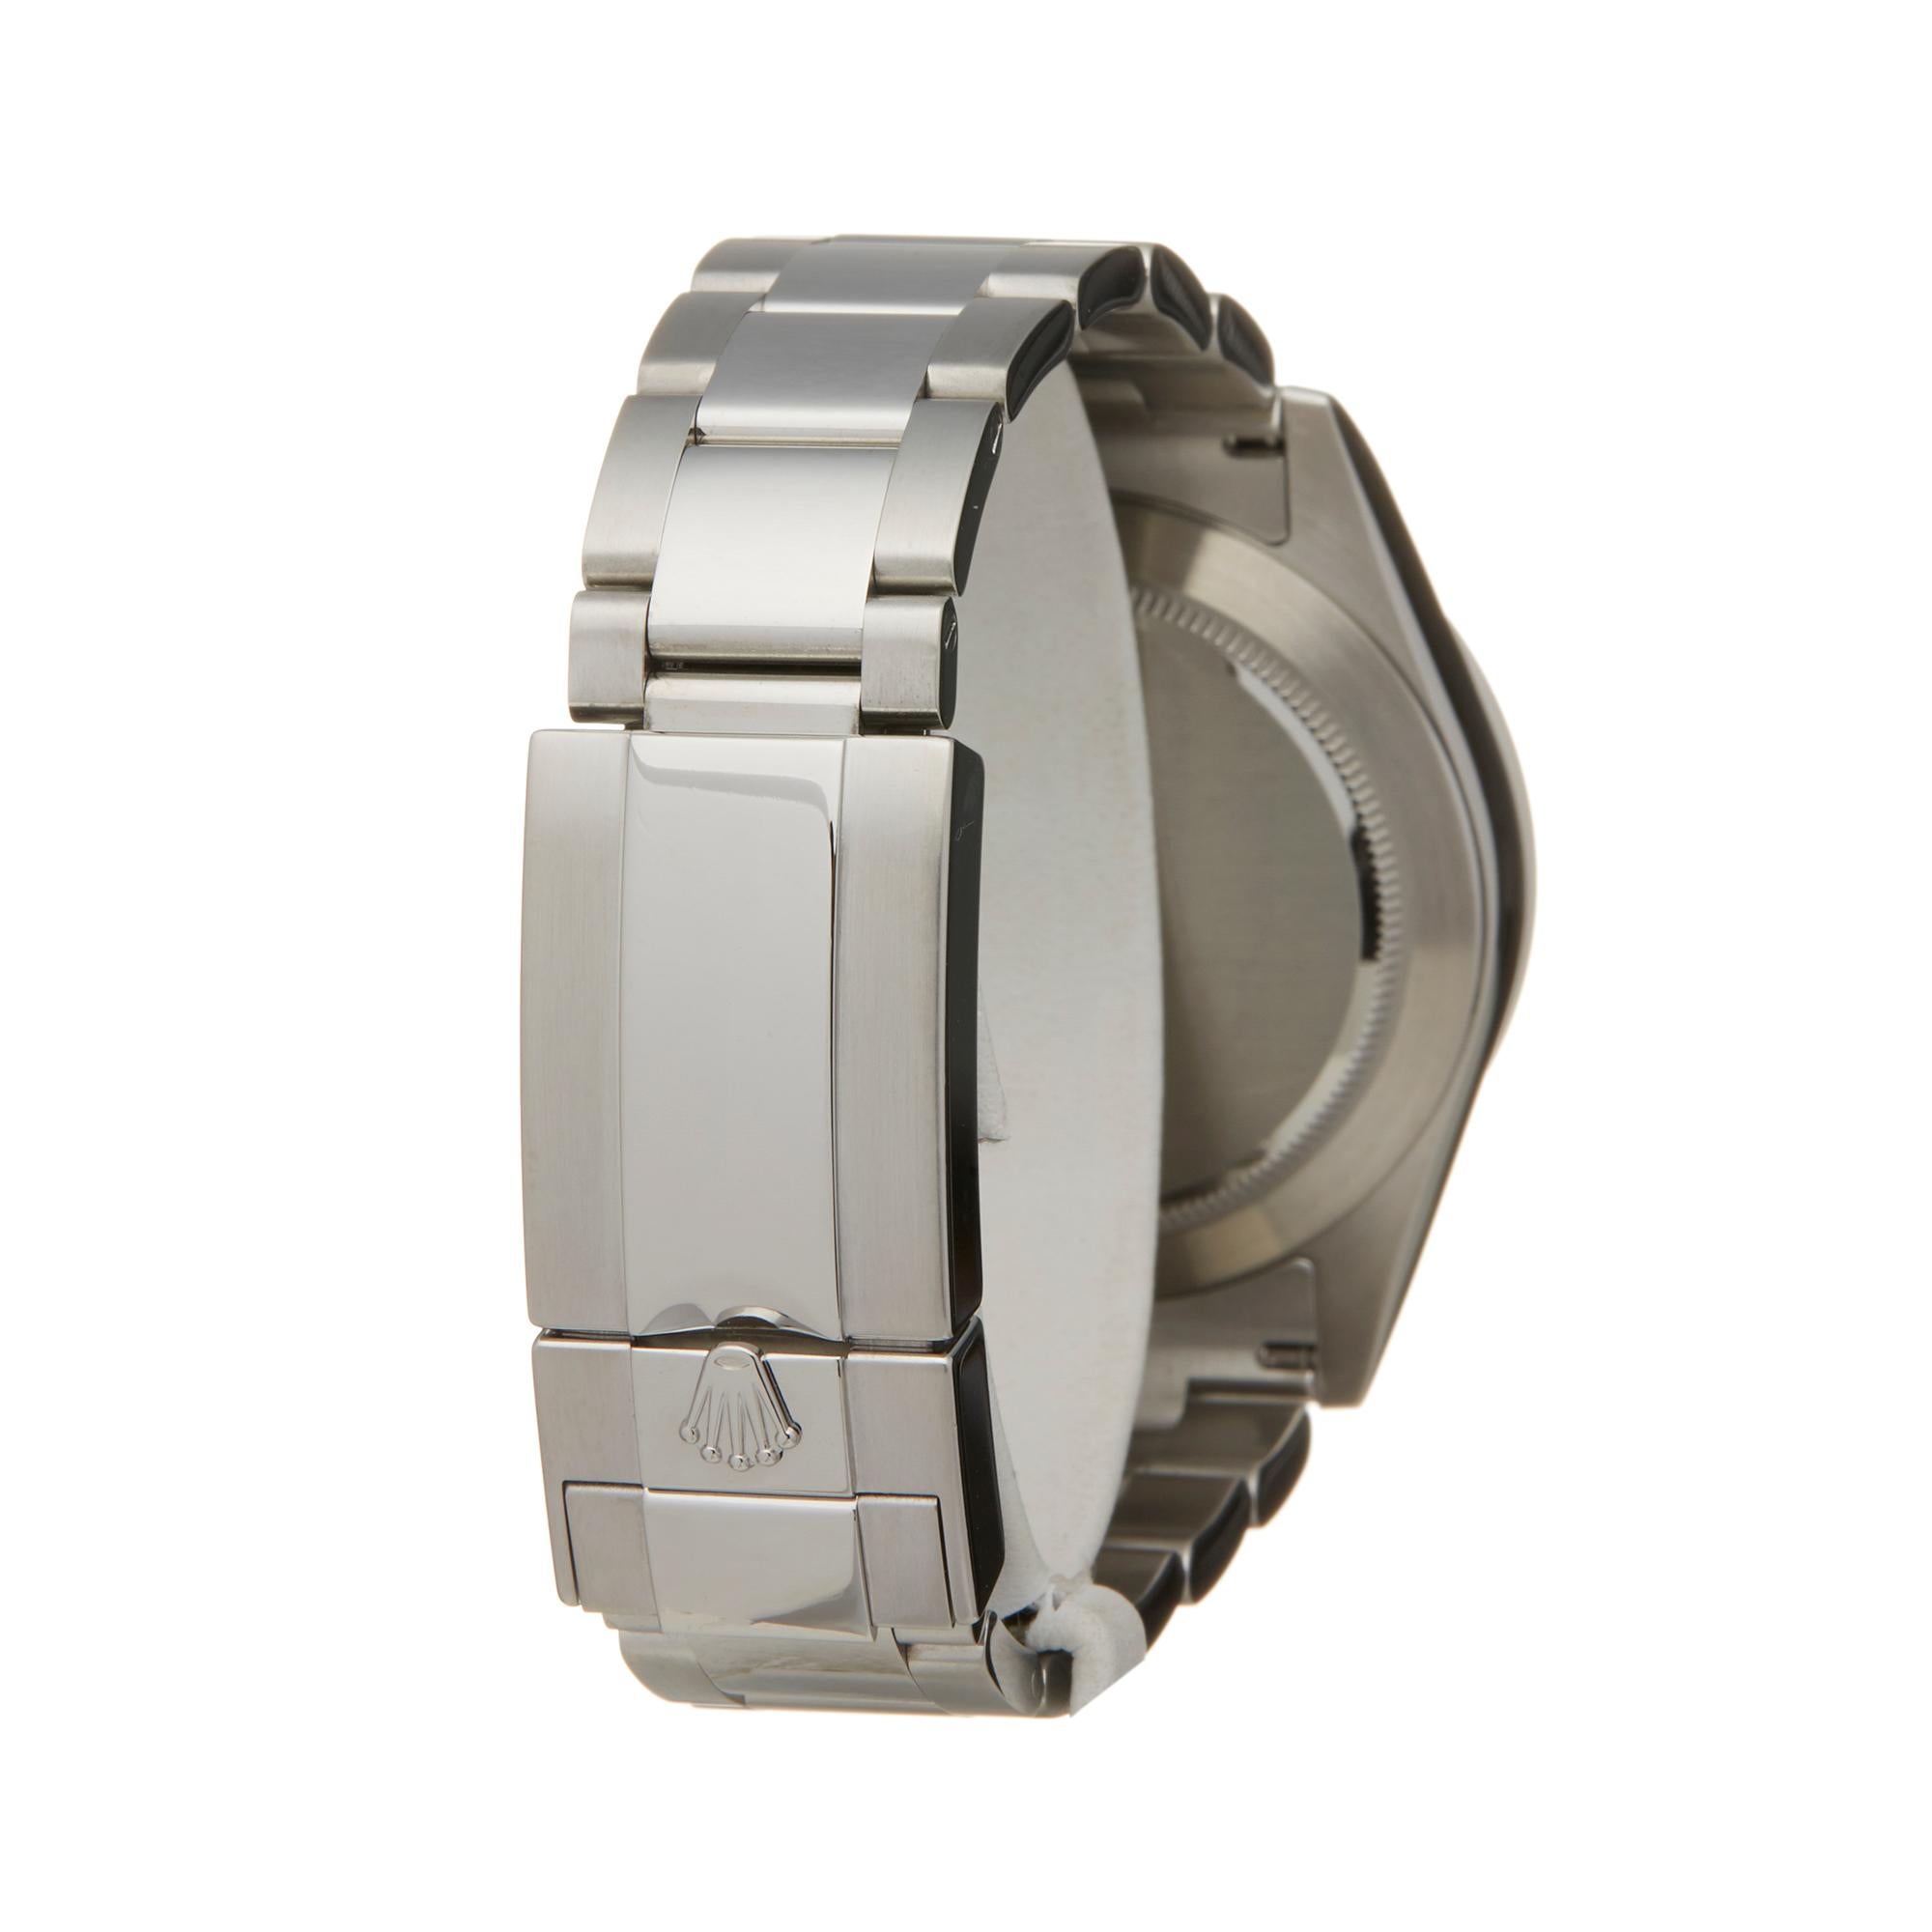 Rolex Daytona Stainless Steel 116520 Wristwatch 1